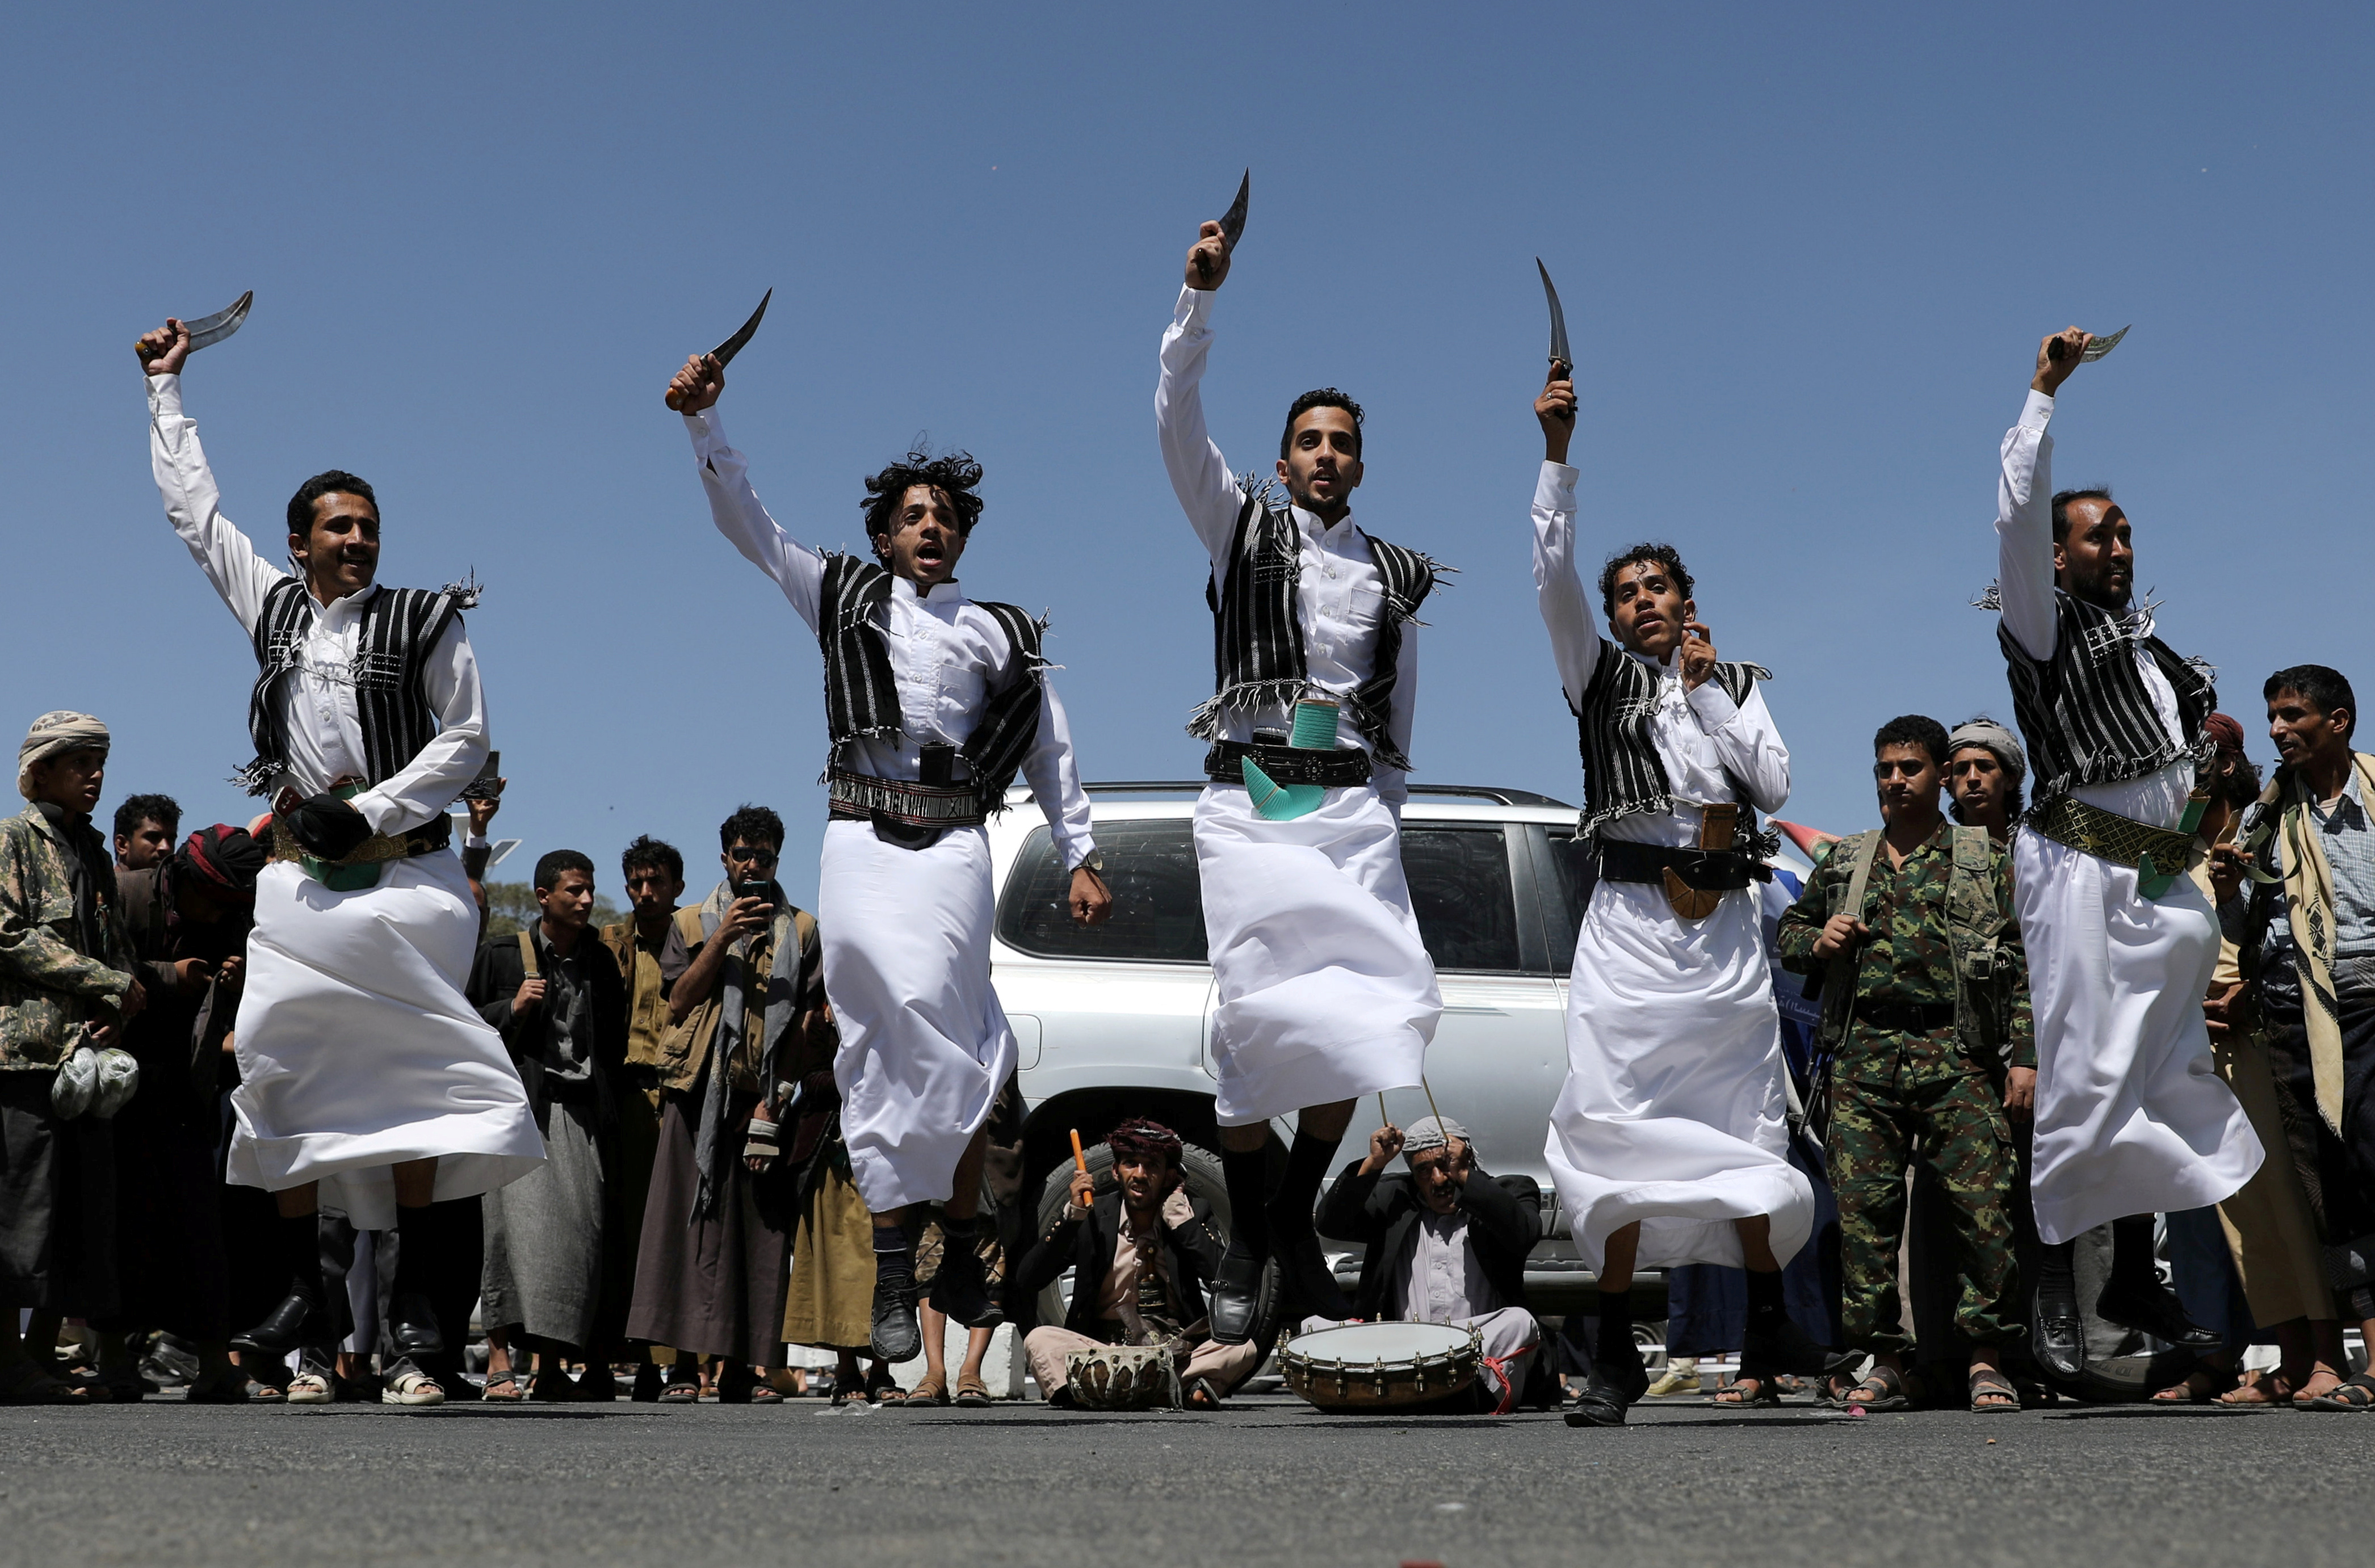 Los partidarios hutíes realizan la danza tradicional de Baraa durante una ceremonia celebrada para recoger suministros para los combatientes hutíes en Saná